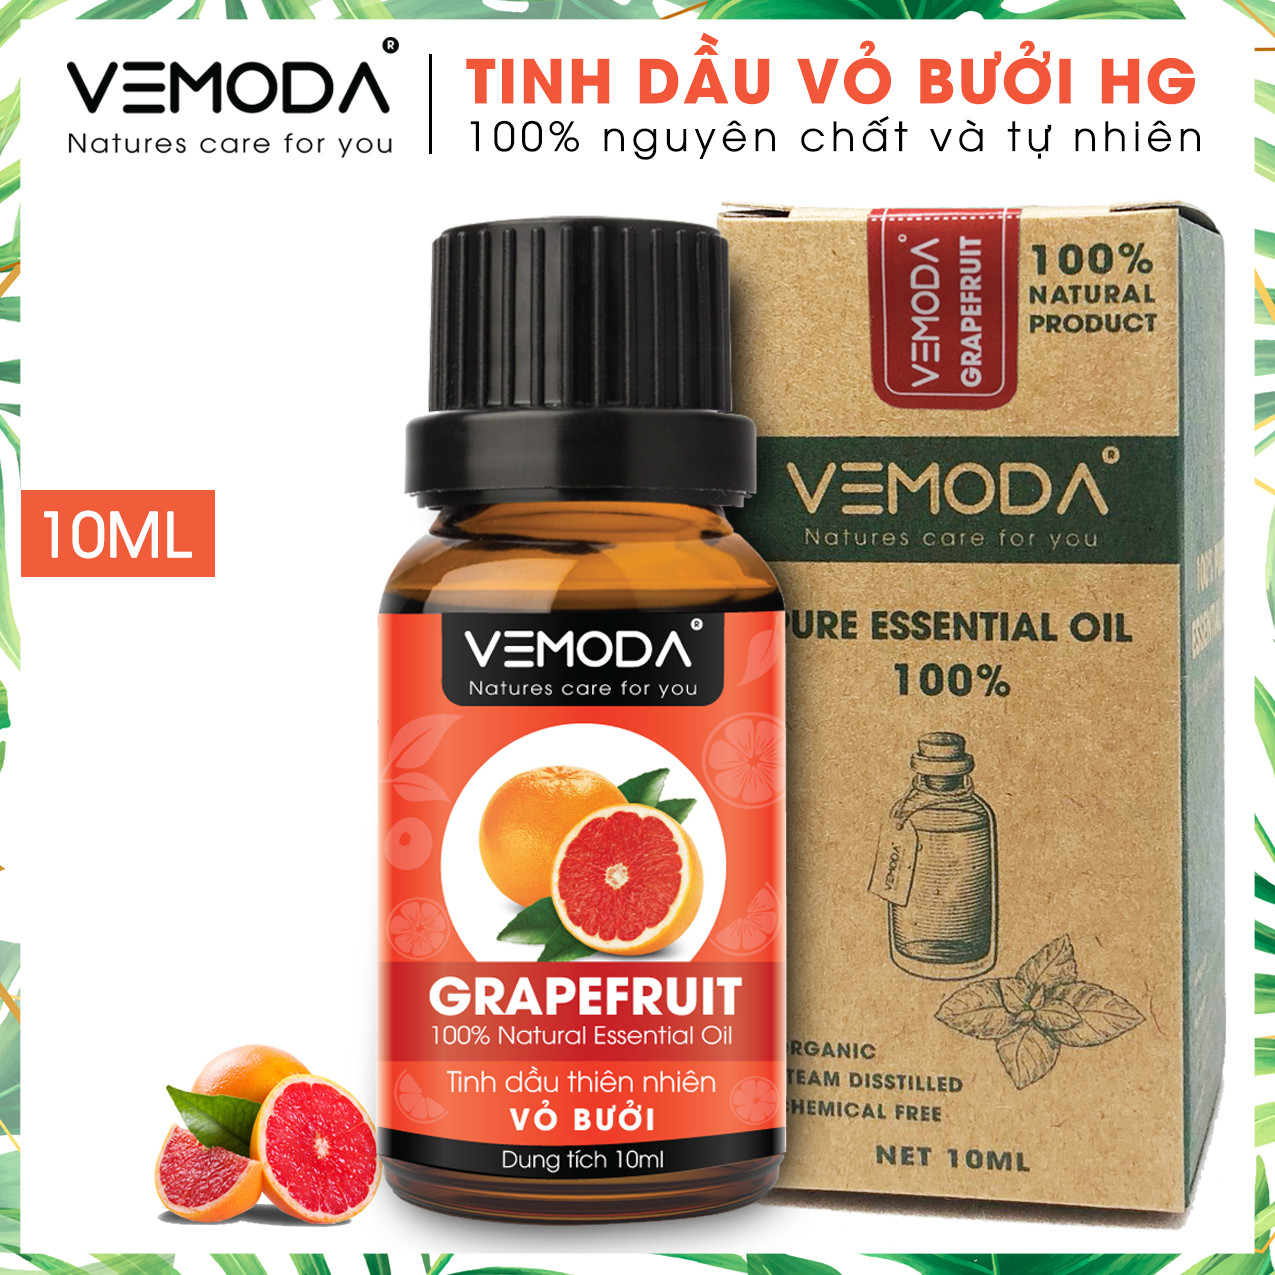 Tinh dầu Vỏ bưởi HG. Grapefruit Essential Oil 10ML. Tinh dầu xông phòng giúp kháng khuẩn, thanh lọc không khí, thư giãn, hỗ trợ giảm cân, chăm sóc da tóc. Tinh dầu thơm phòng cao cấp Vemoda